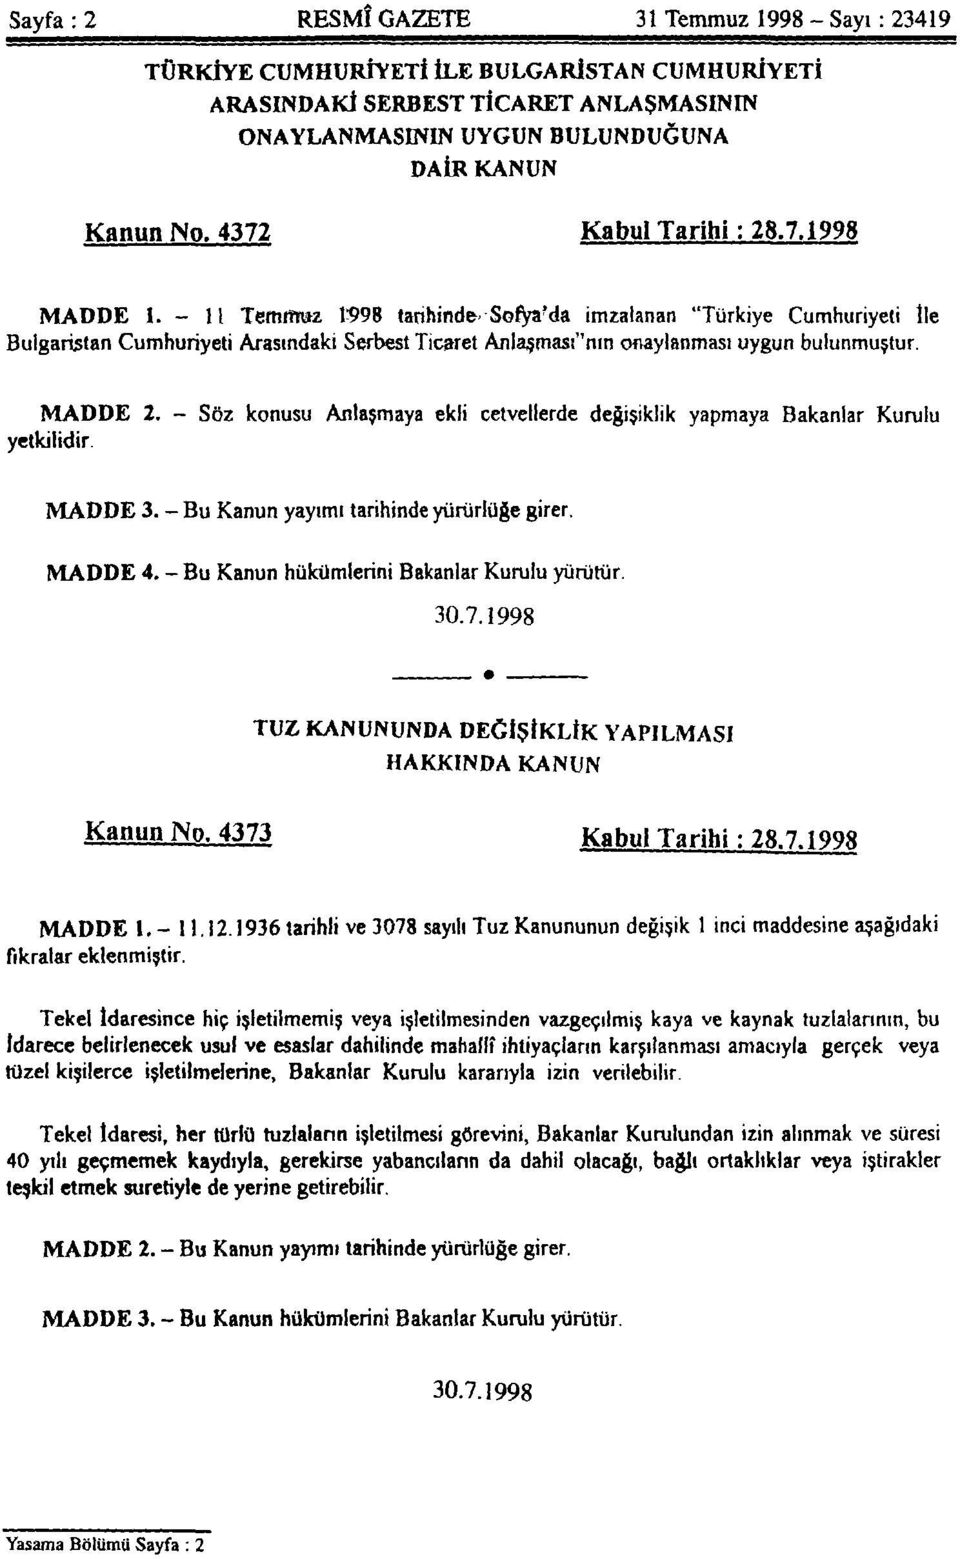 - 11 Temmuz 1998 tarihinde Sofya'da imzalanan "Türkiye Cumhuriyeti İle Bulgaristan Cumhuriyeti Arasındaki Serbest Ticaret Anlaşması''nın onaylanması uygun bulunmuştur. MADDE 2.